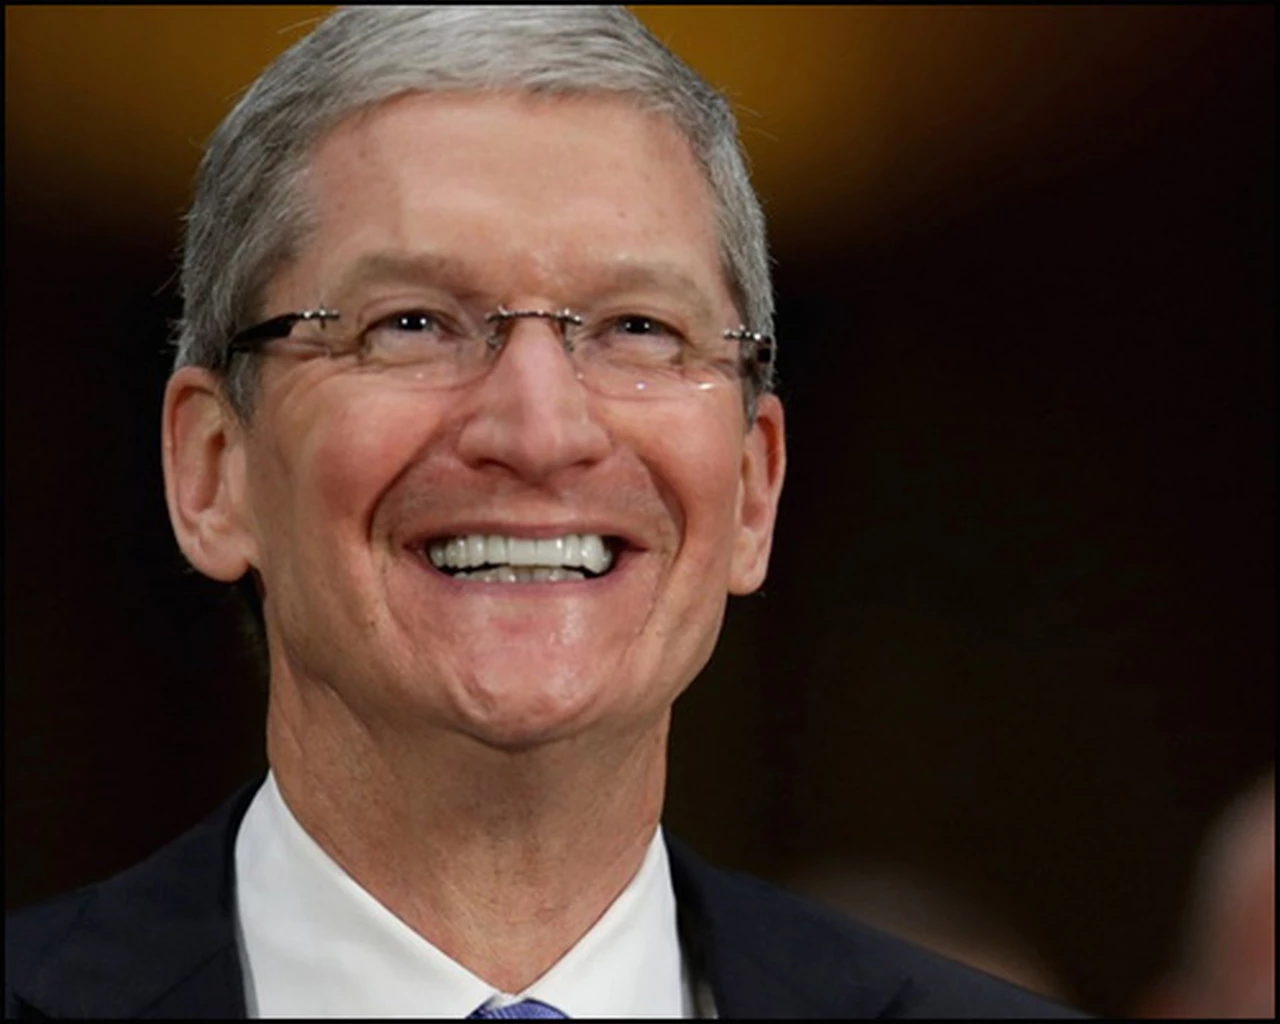 El CEO de Apple sale del closet: "Estoy orgulloso de ser gay"